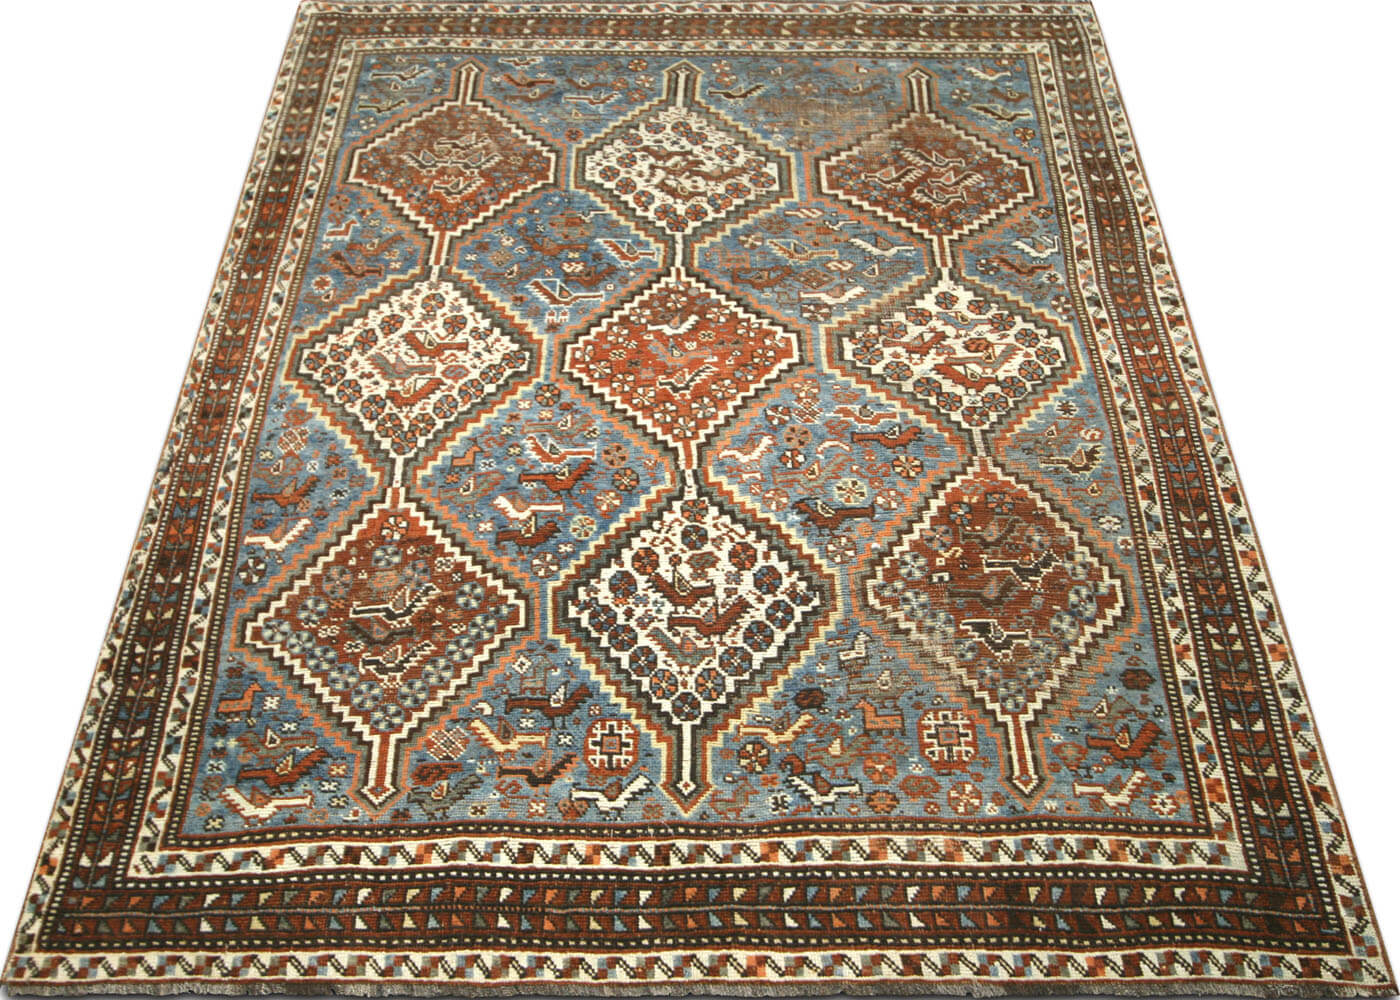 Semi Antique Persian Shiraz Rug - 4'5" x 6'3"